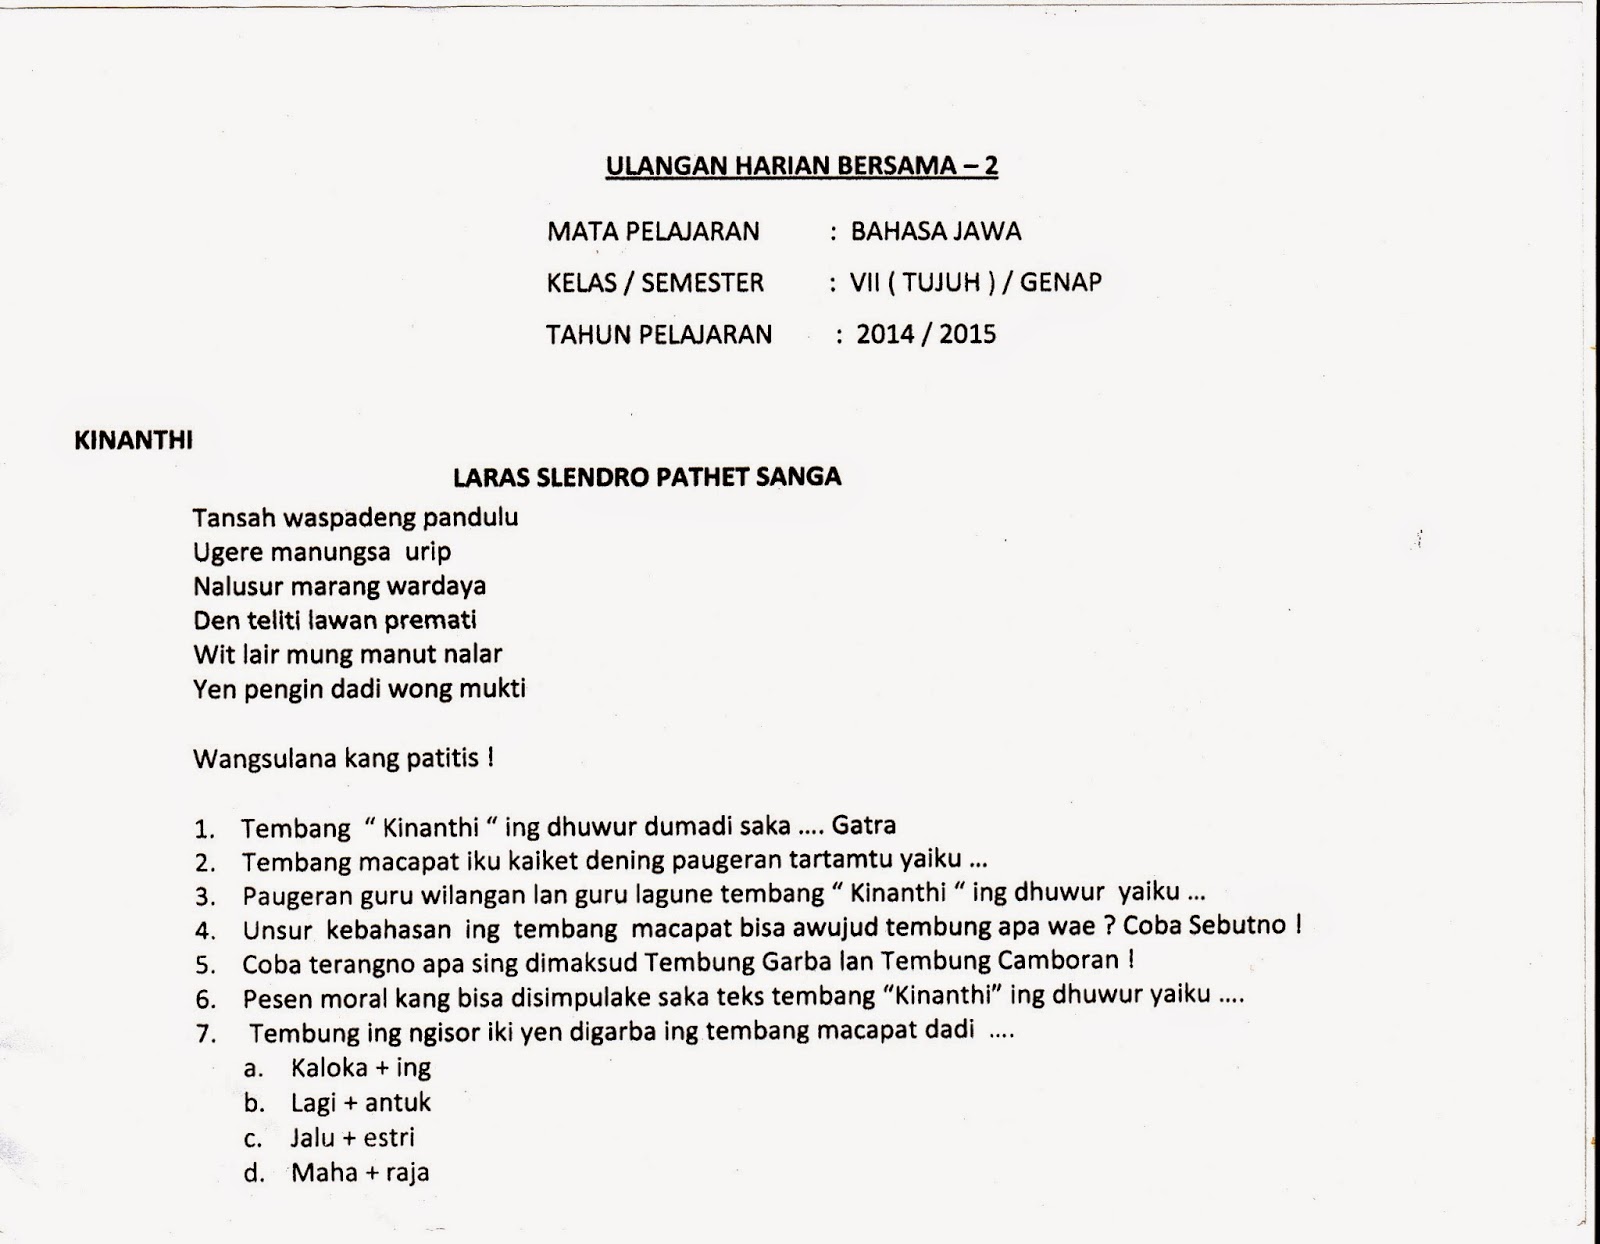 UHB Ulangan Harian Bersama Bahasa Jawa SMP Kelas 7 Semester Genap 2014 2015